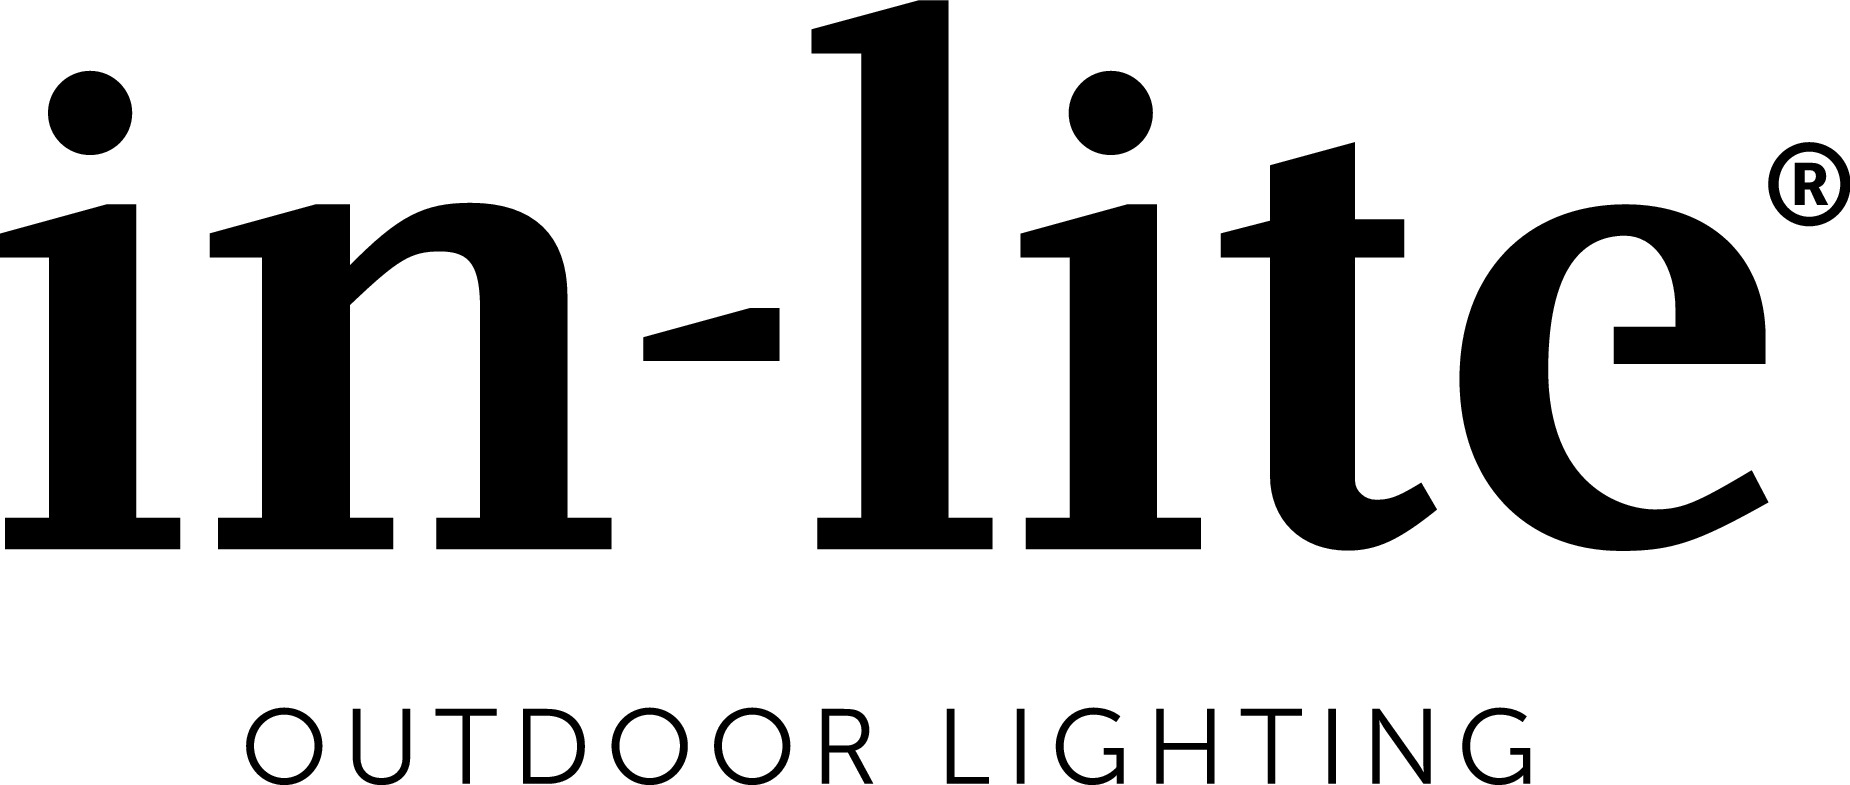 in-lite outdoor lighting